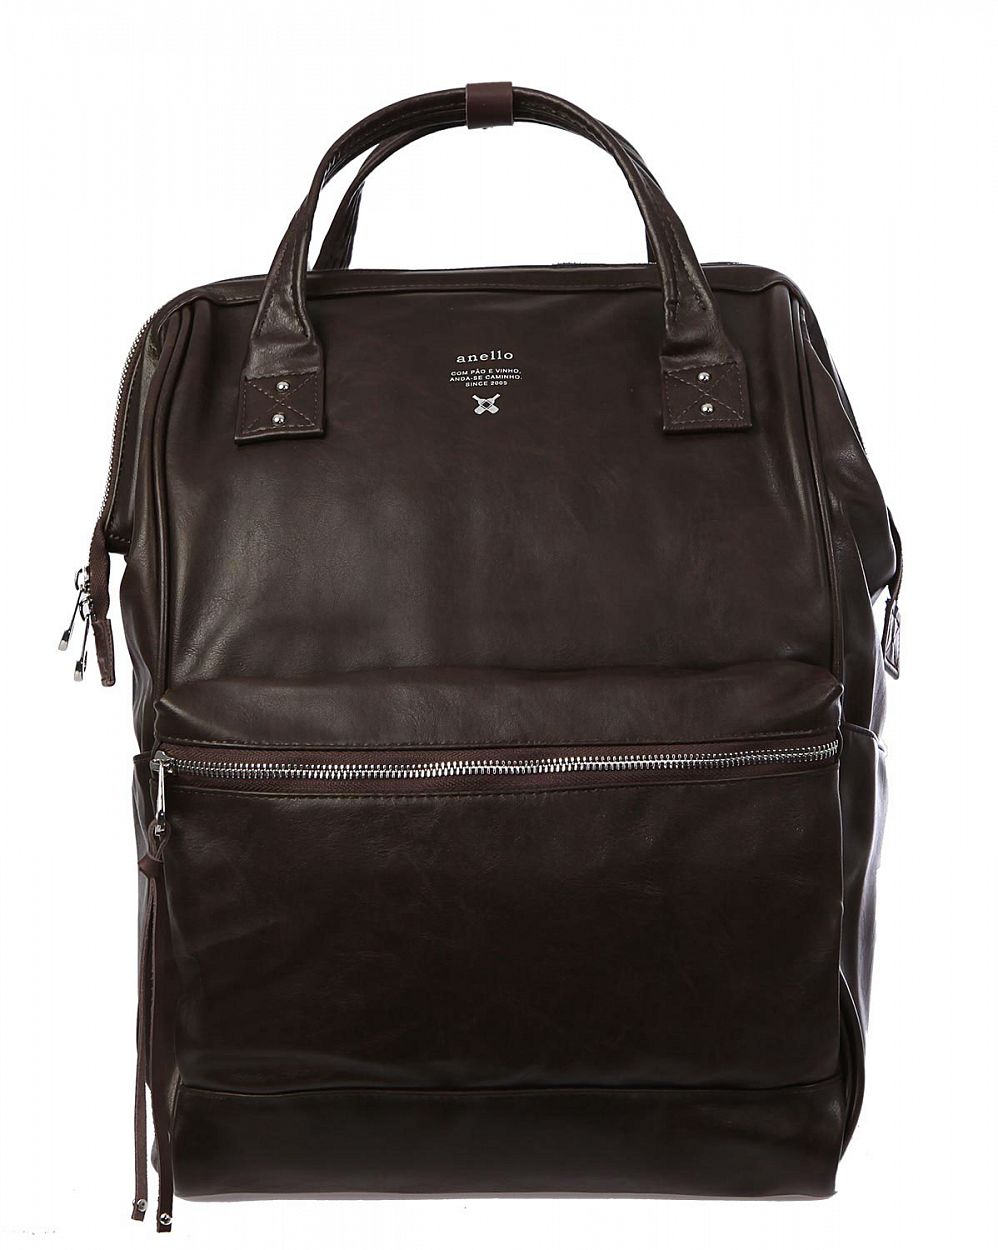 Рюкзак с двумя ручками кожаный для 13 ноутбука Anello Japan AT-B1511 Dark Brown отзывы